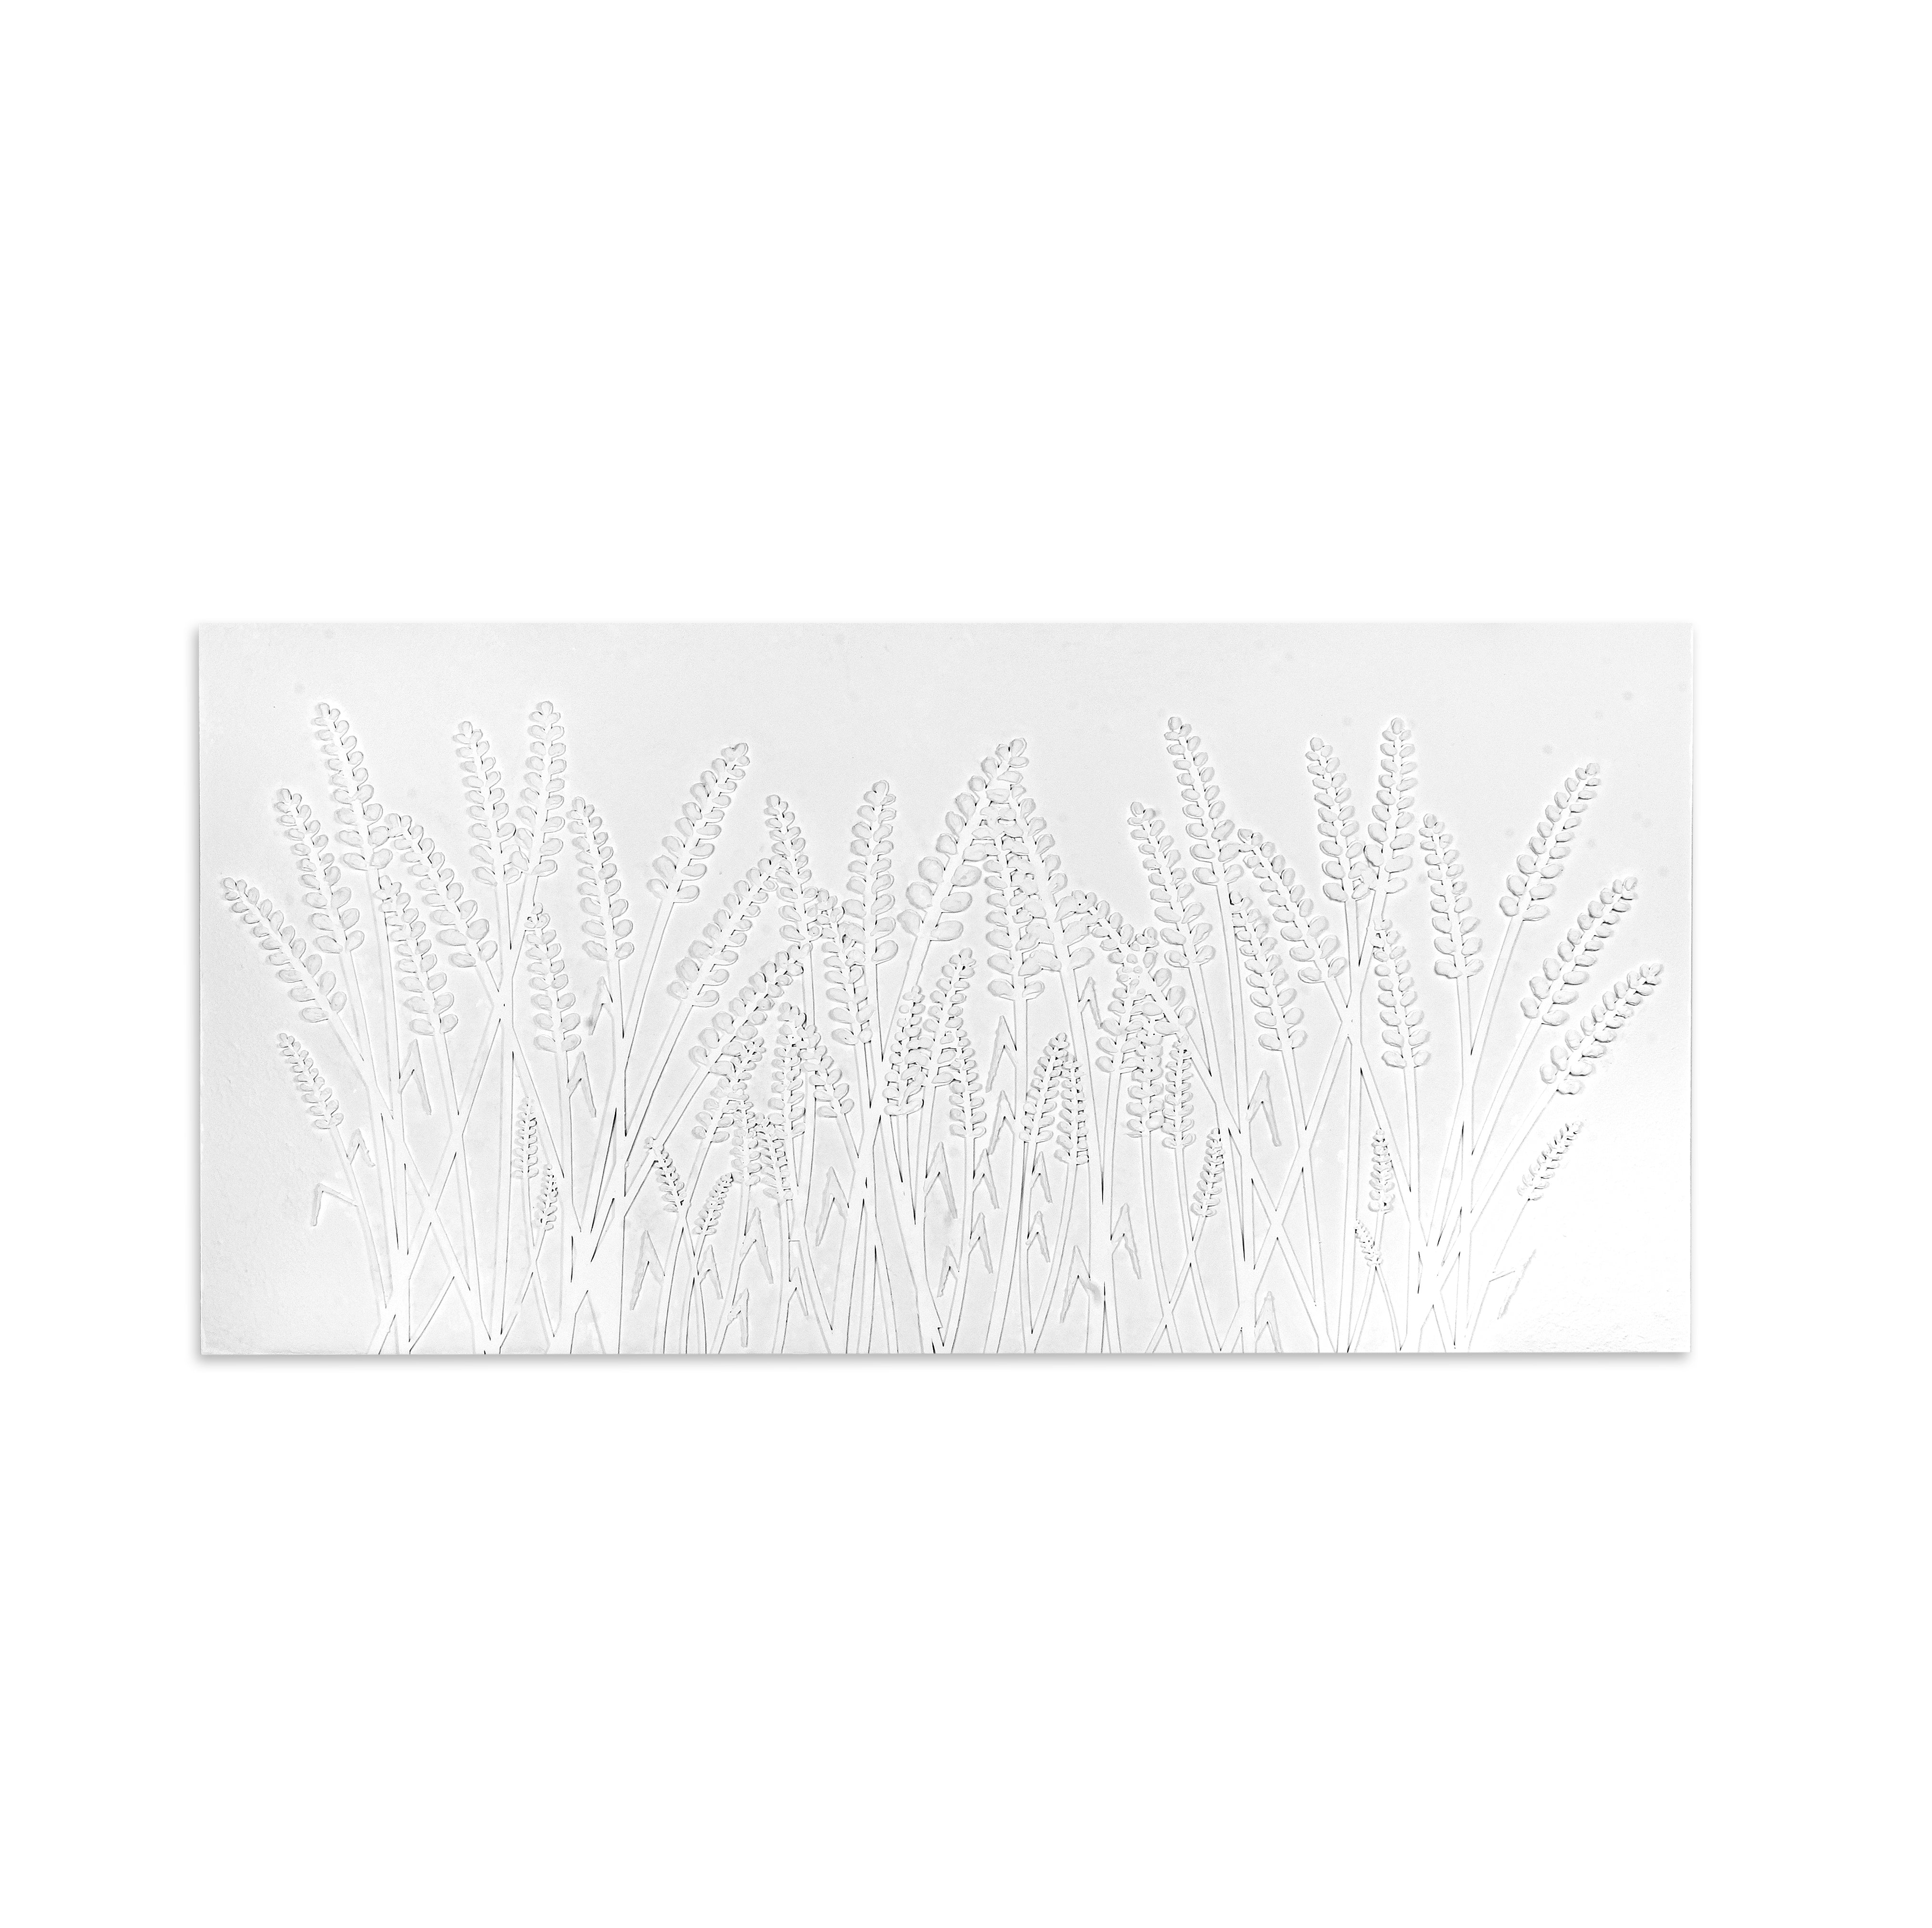 Wall Decor 3D Metallic Corn Field White Approx H48 X L24 X D0.78inch 1pc